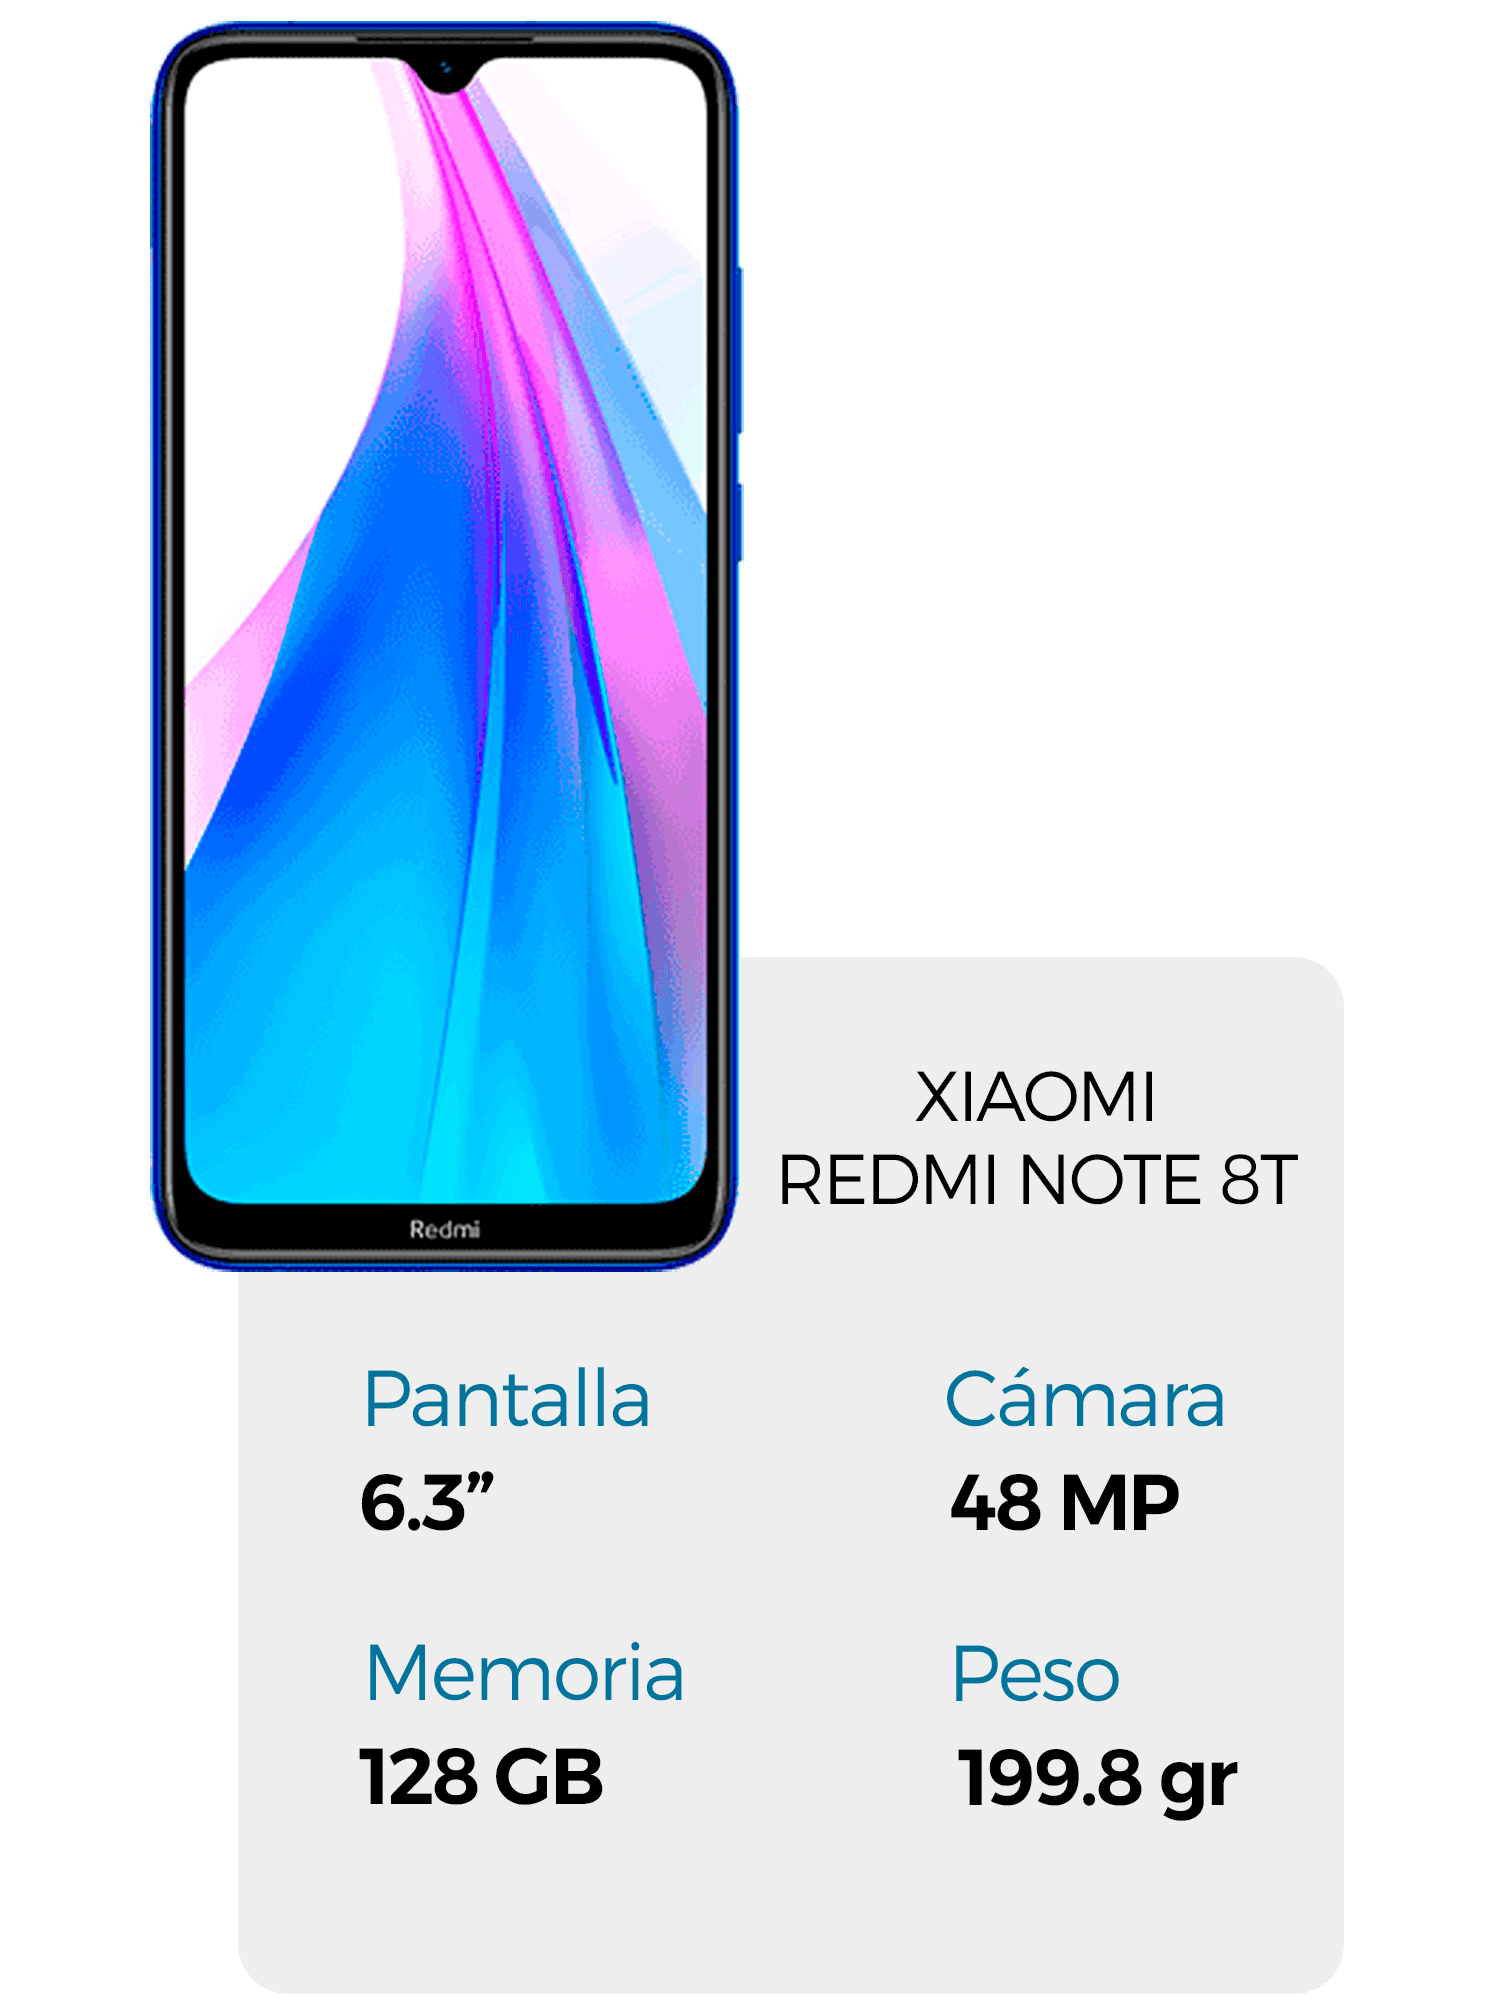 Xiaomi RedMI Note 8